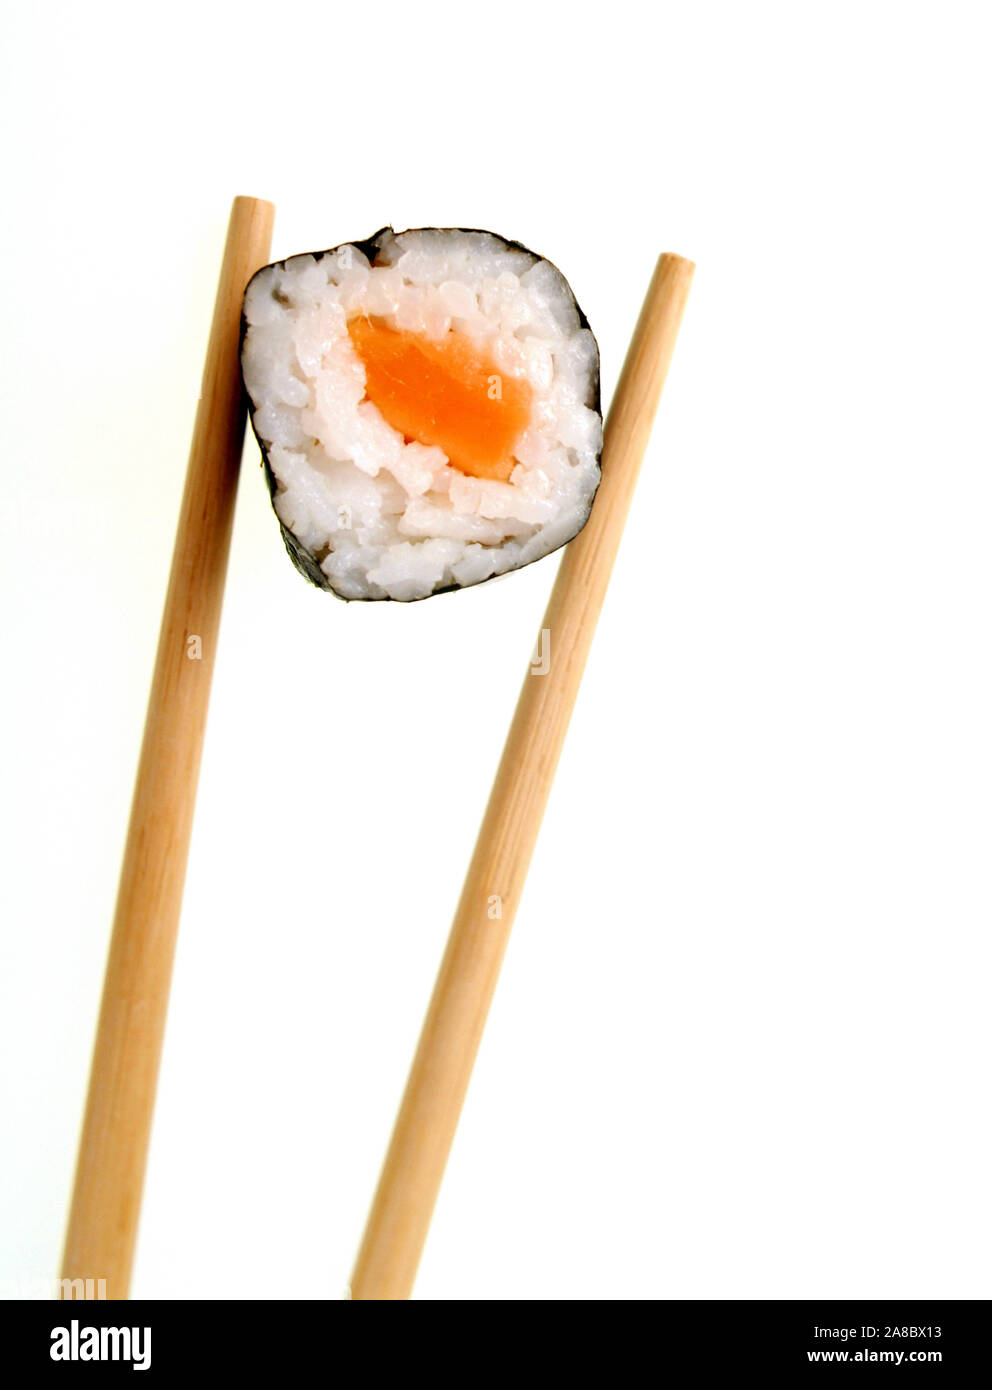 Süße Essbare Sushi Stäbchen / Essstäbchen - Wisefood Chopsticks